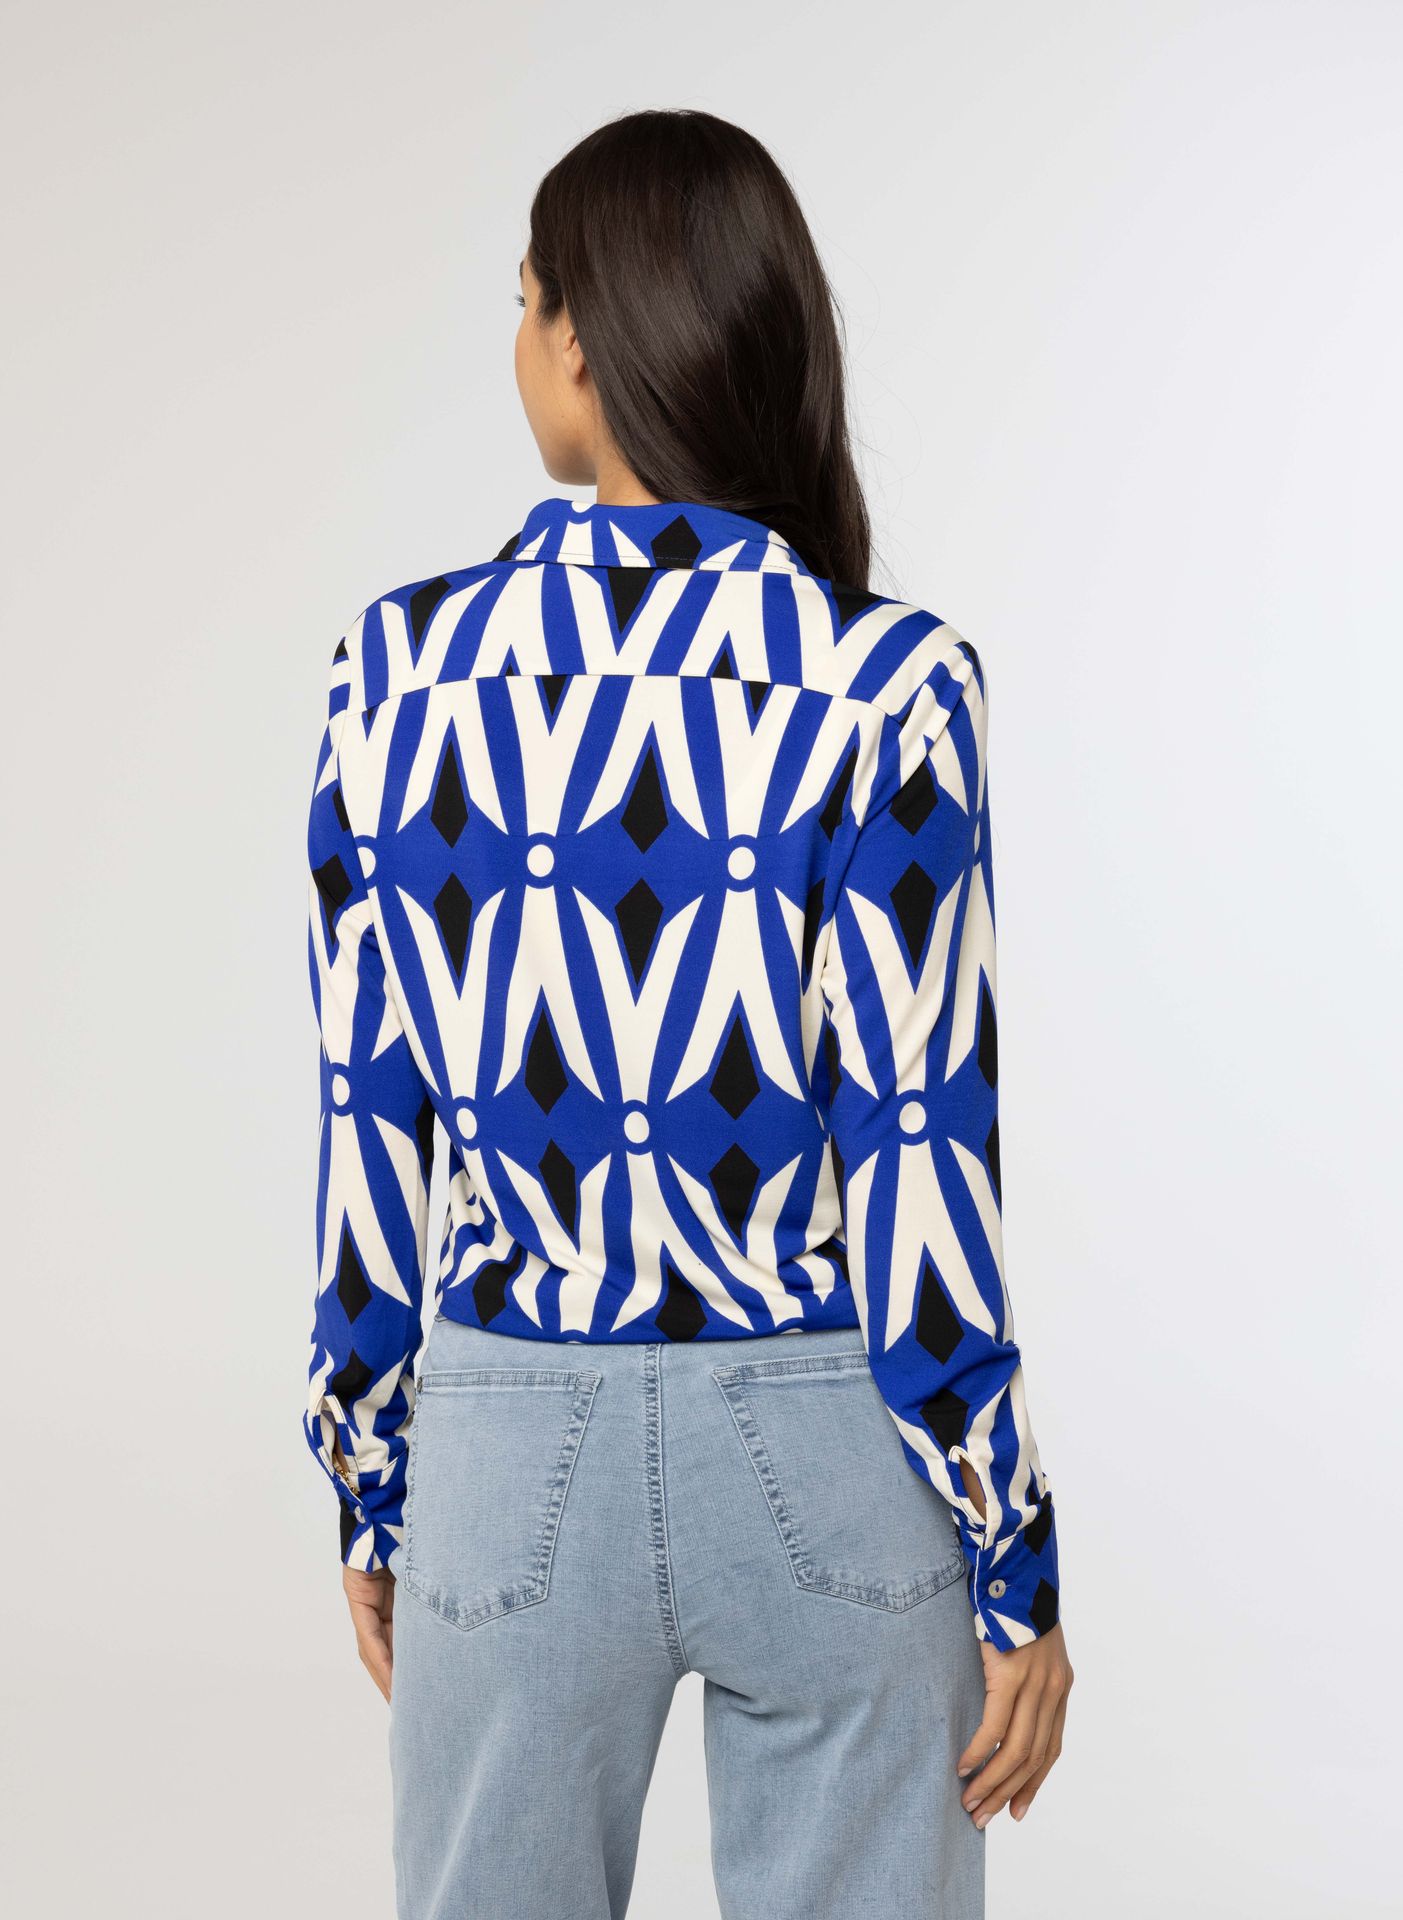 Norah Kobaltblauwe blouse met print blue multicolor 213898-420